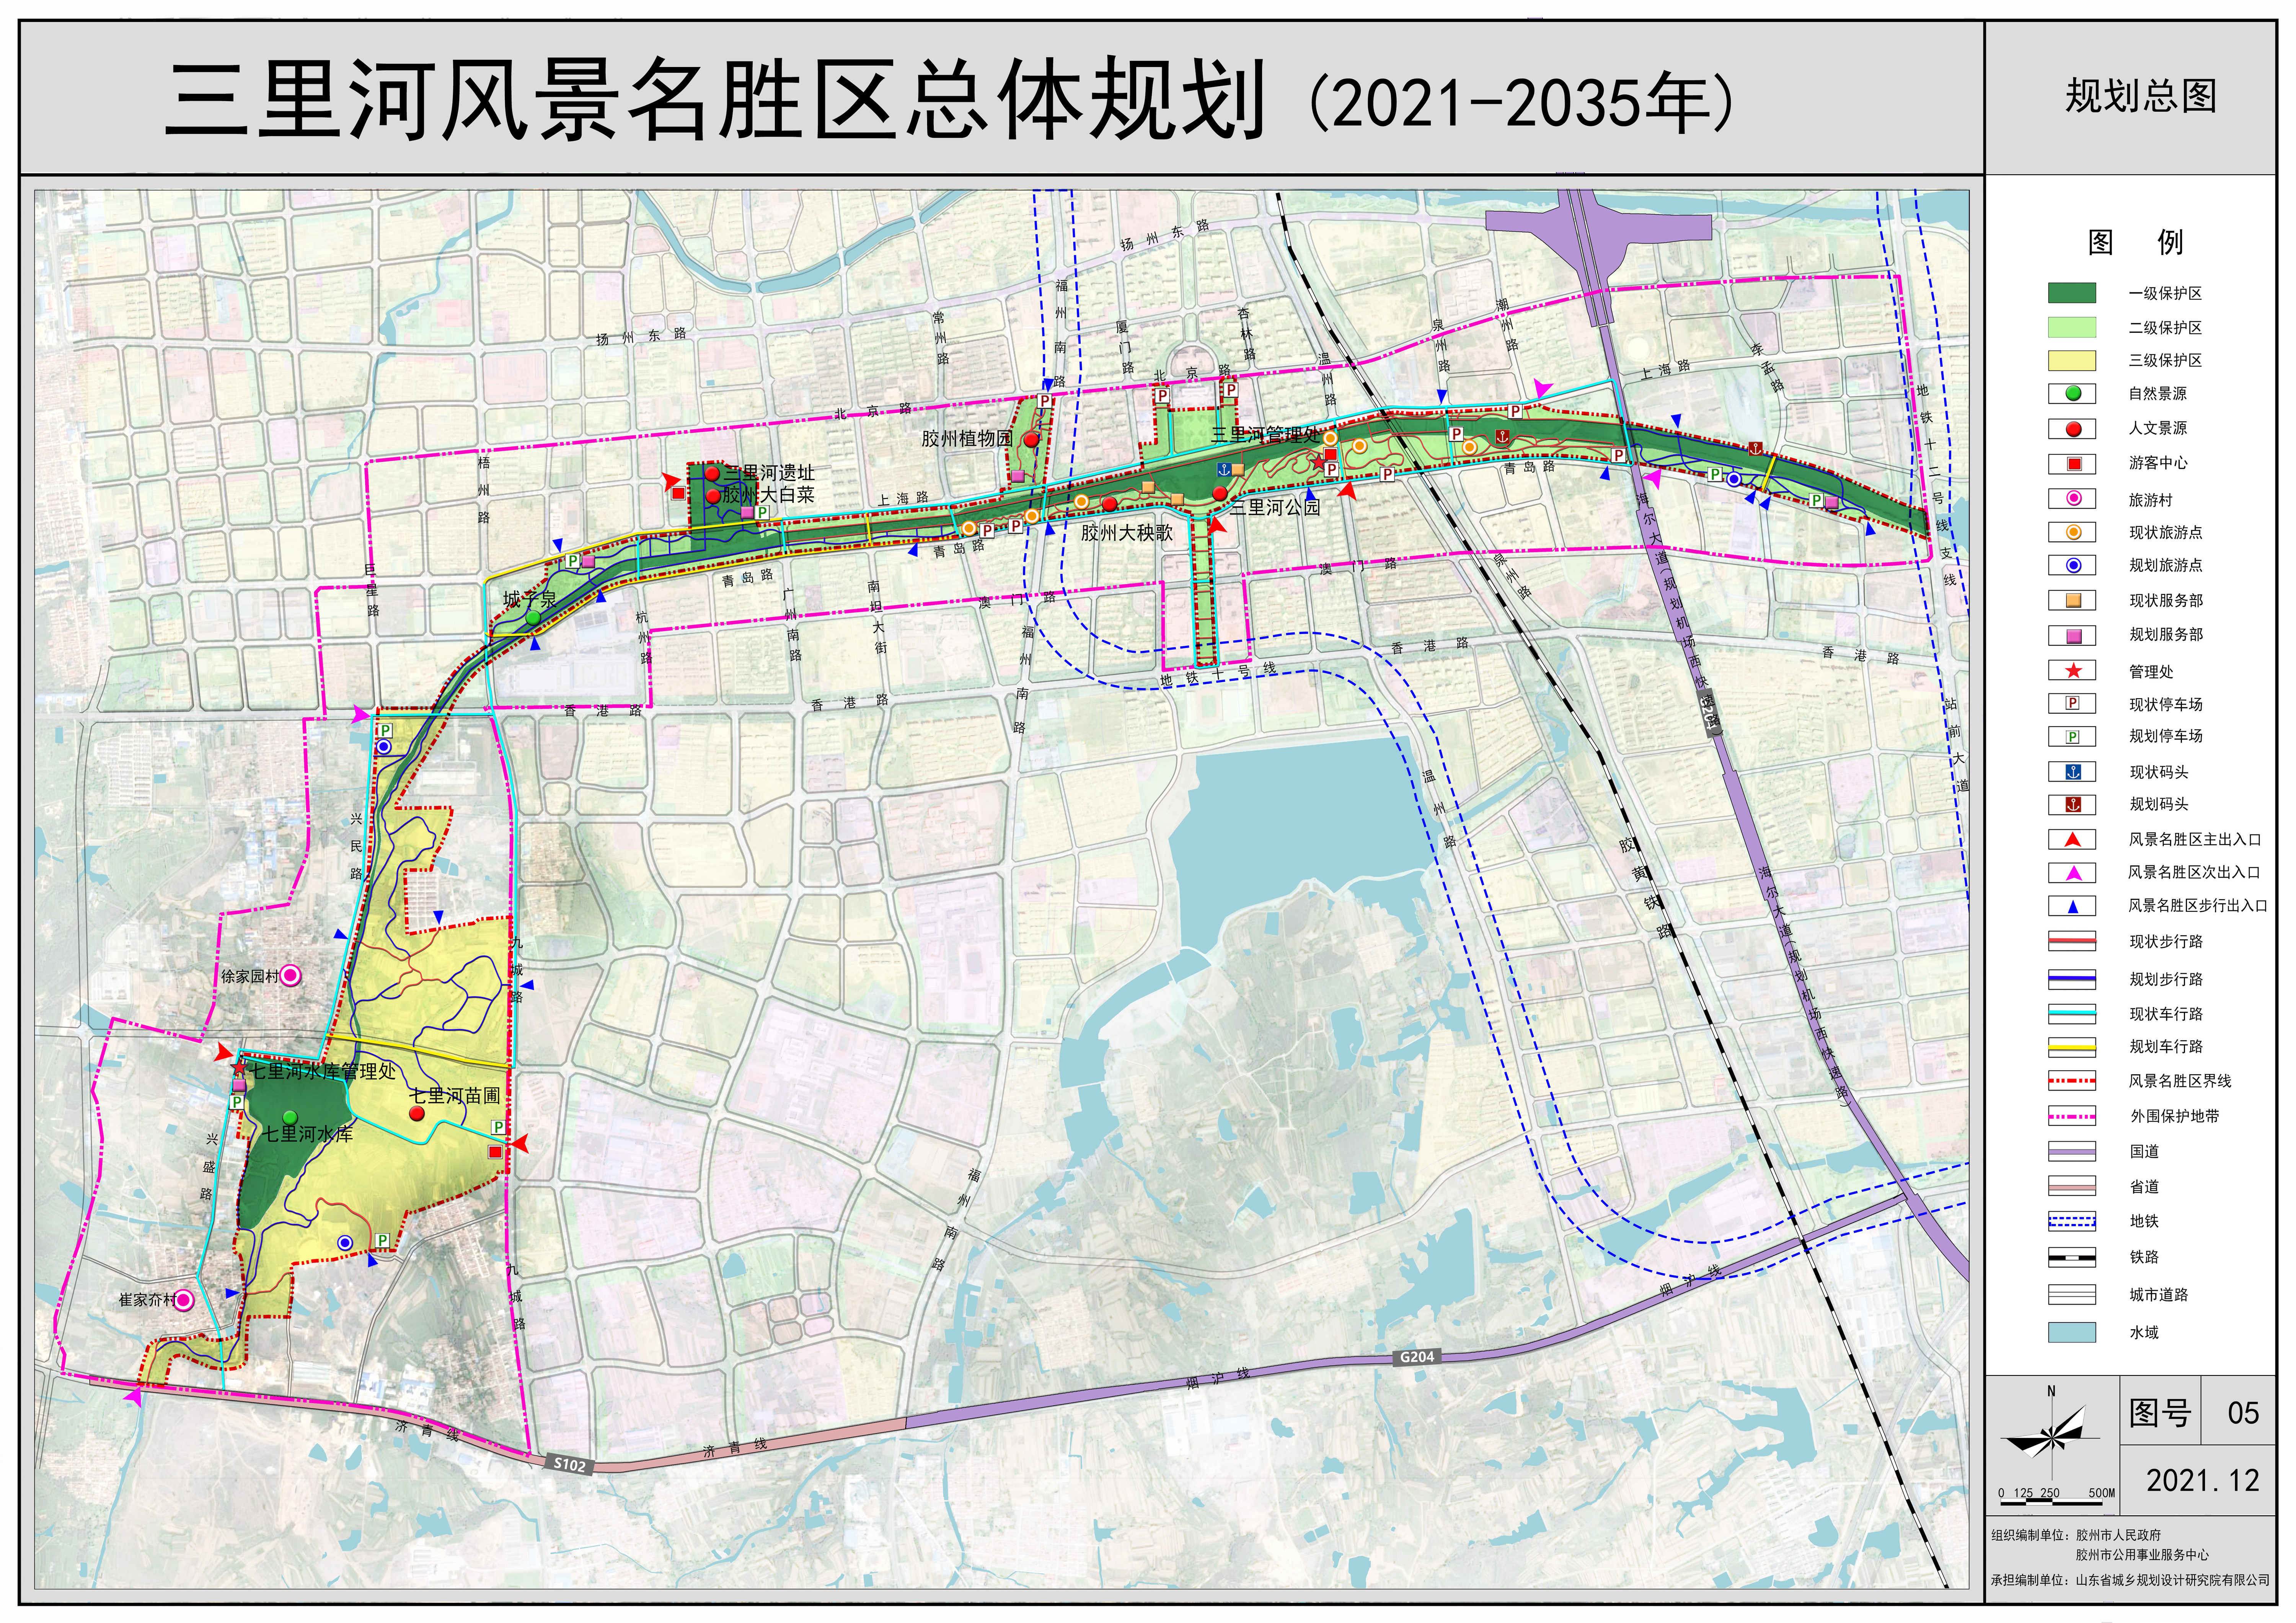 号外！胶州三里河风景名胜区总体规划(2021-2035年)正式亮相！征求意见稿公示